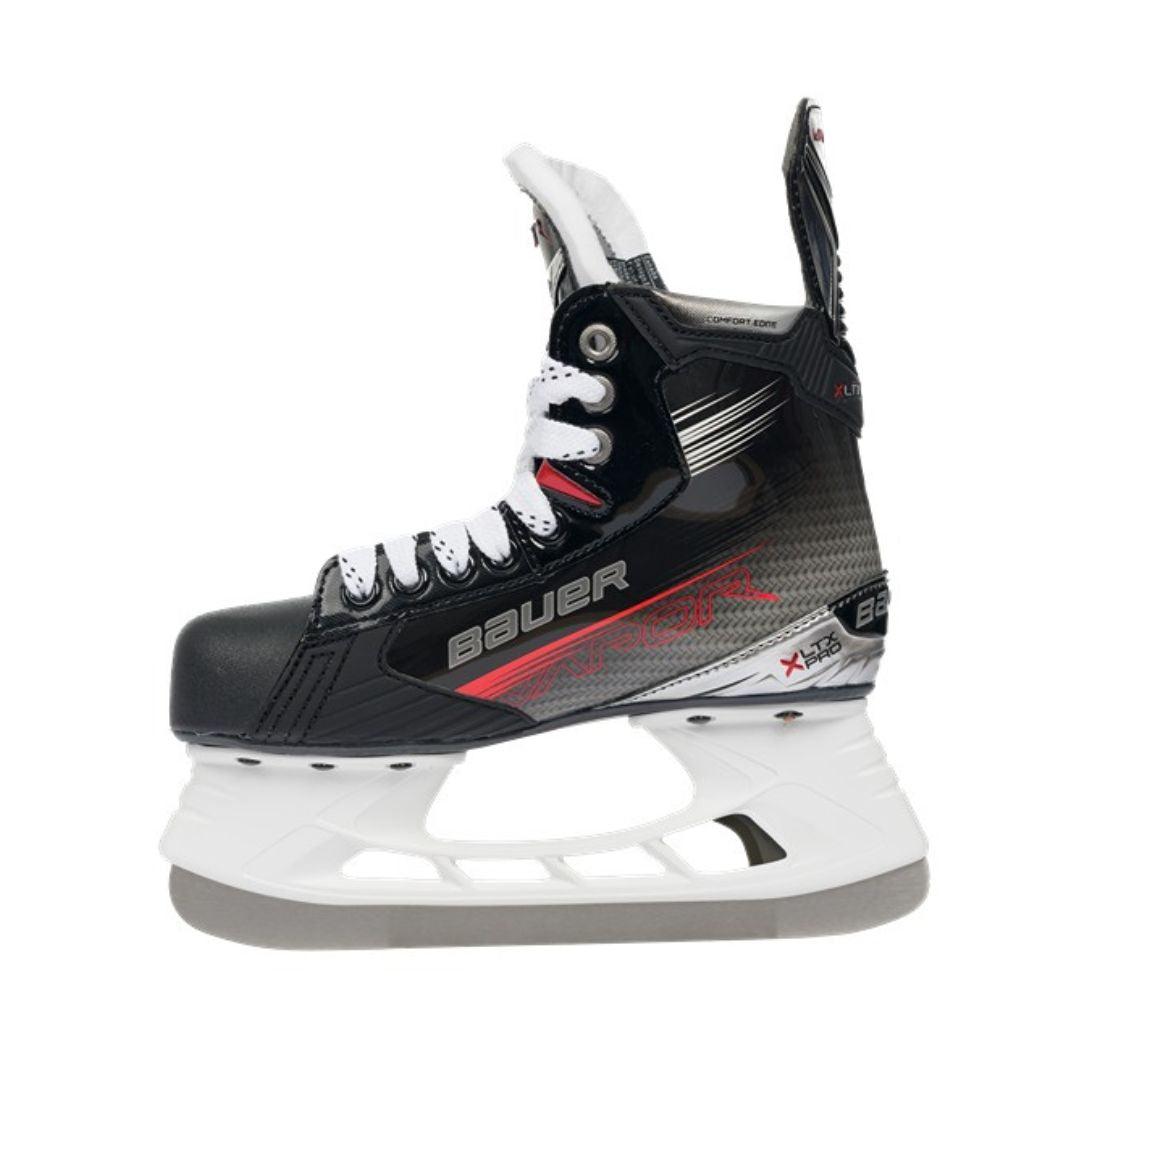 Bauer Vapor XLTX Pro Hockey Skates 